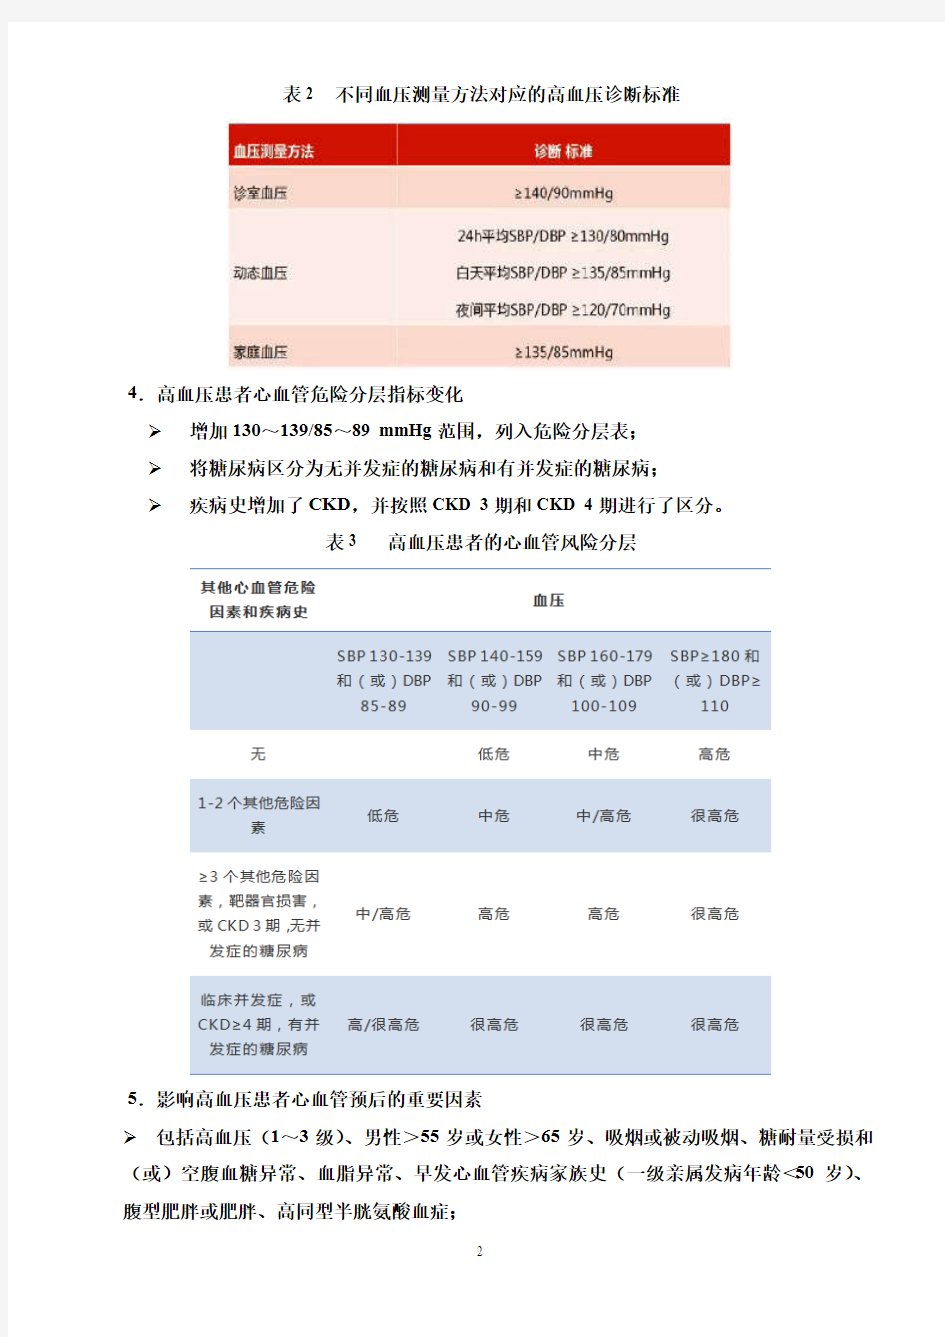 中国高血压防治指南修订版要点解读